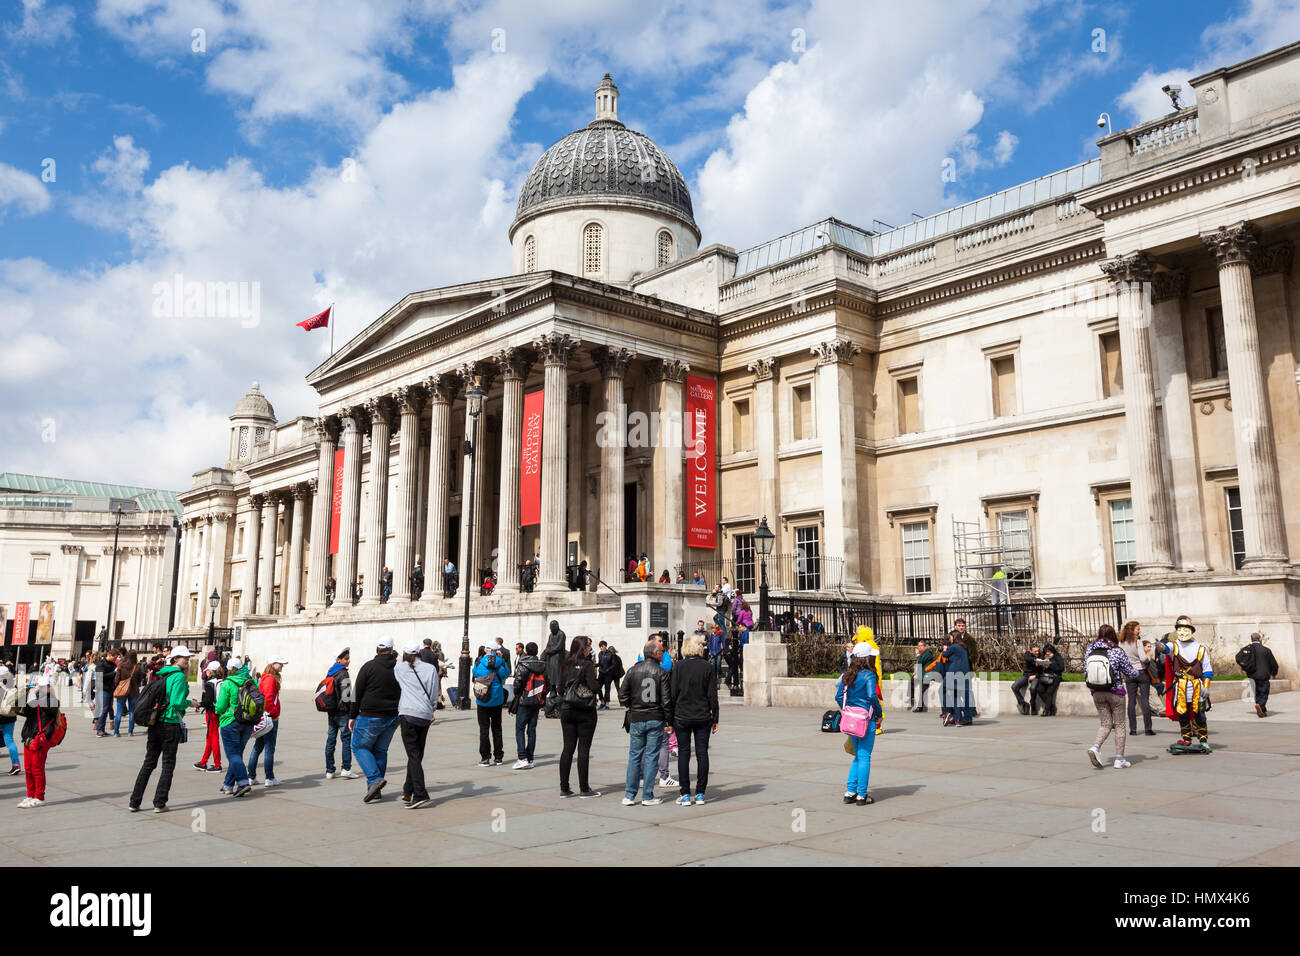 Londres - le 26 avril : les touristes et les artistes de rue en dehors de la National Gallery à Trafalgar Square, Londres, le 26 avril 2013. Le musée abrite la na Banque D'Images